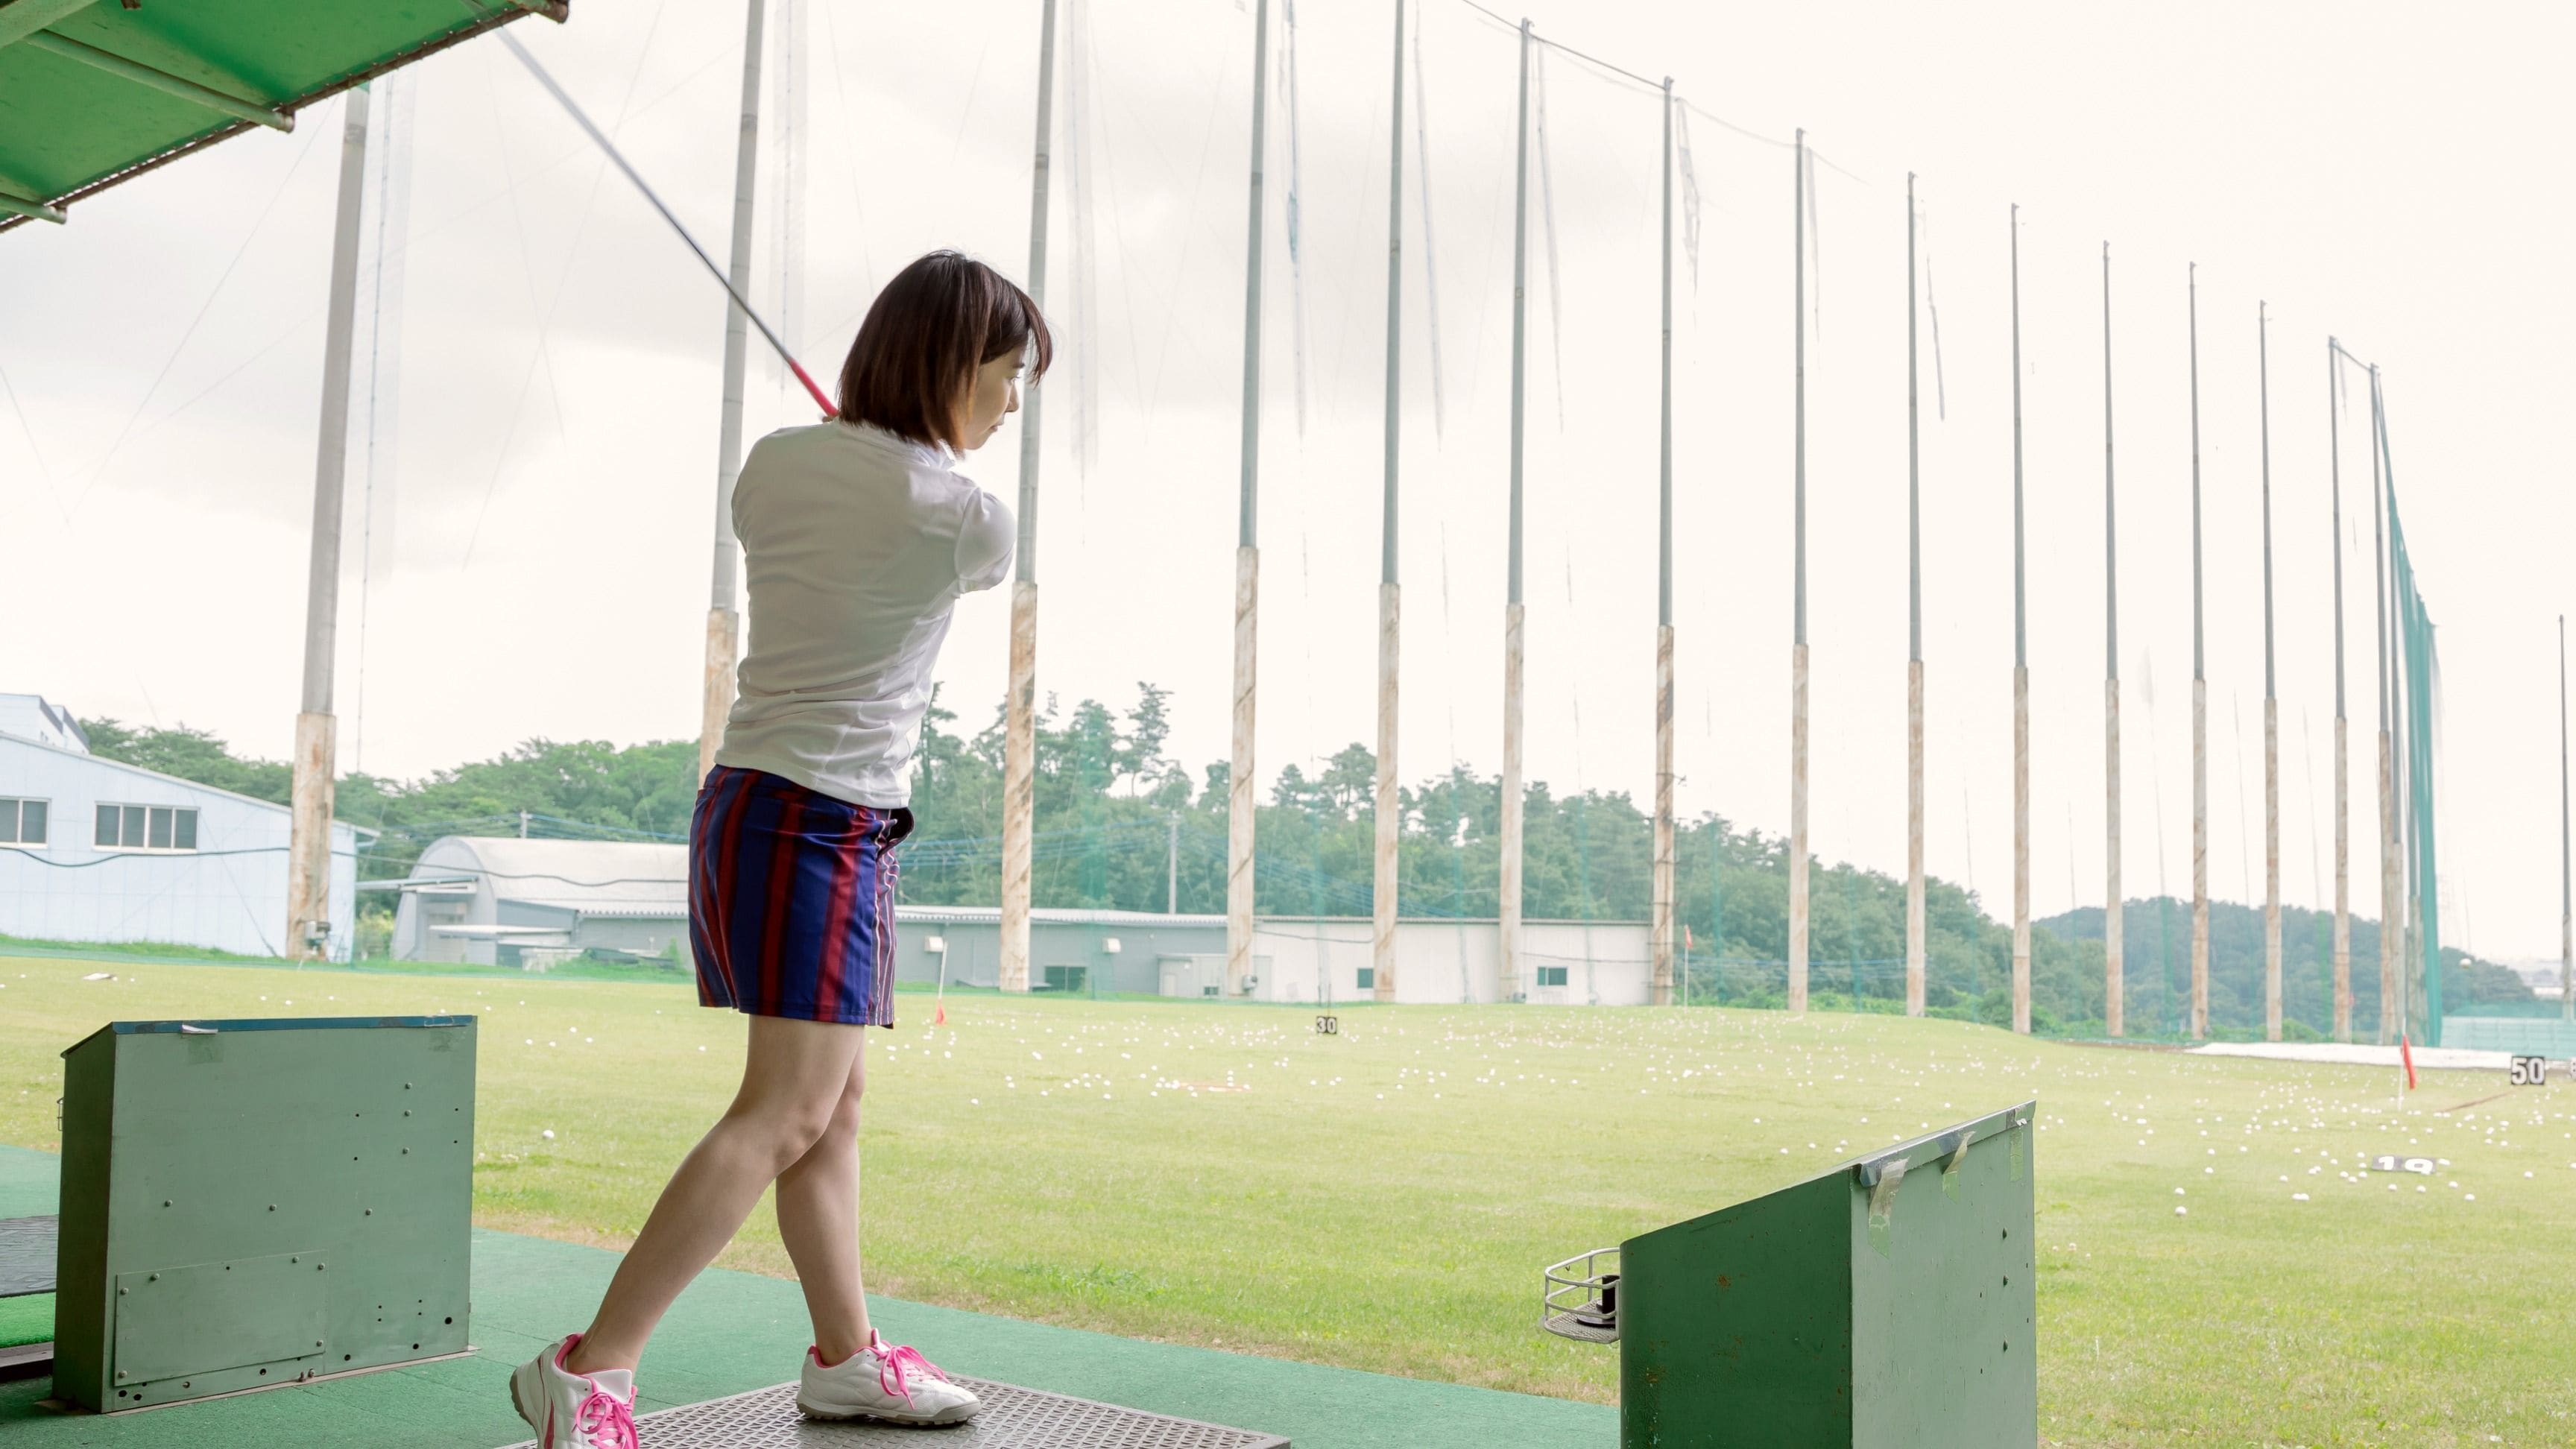 屋外ゴルフ練習場 大幅減の裏にある相続問題 スポーツ 東洋経済オンライン 社会をよくする経済ニュース